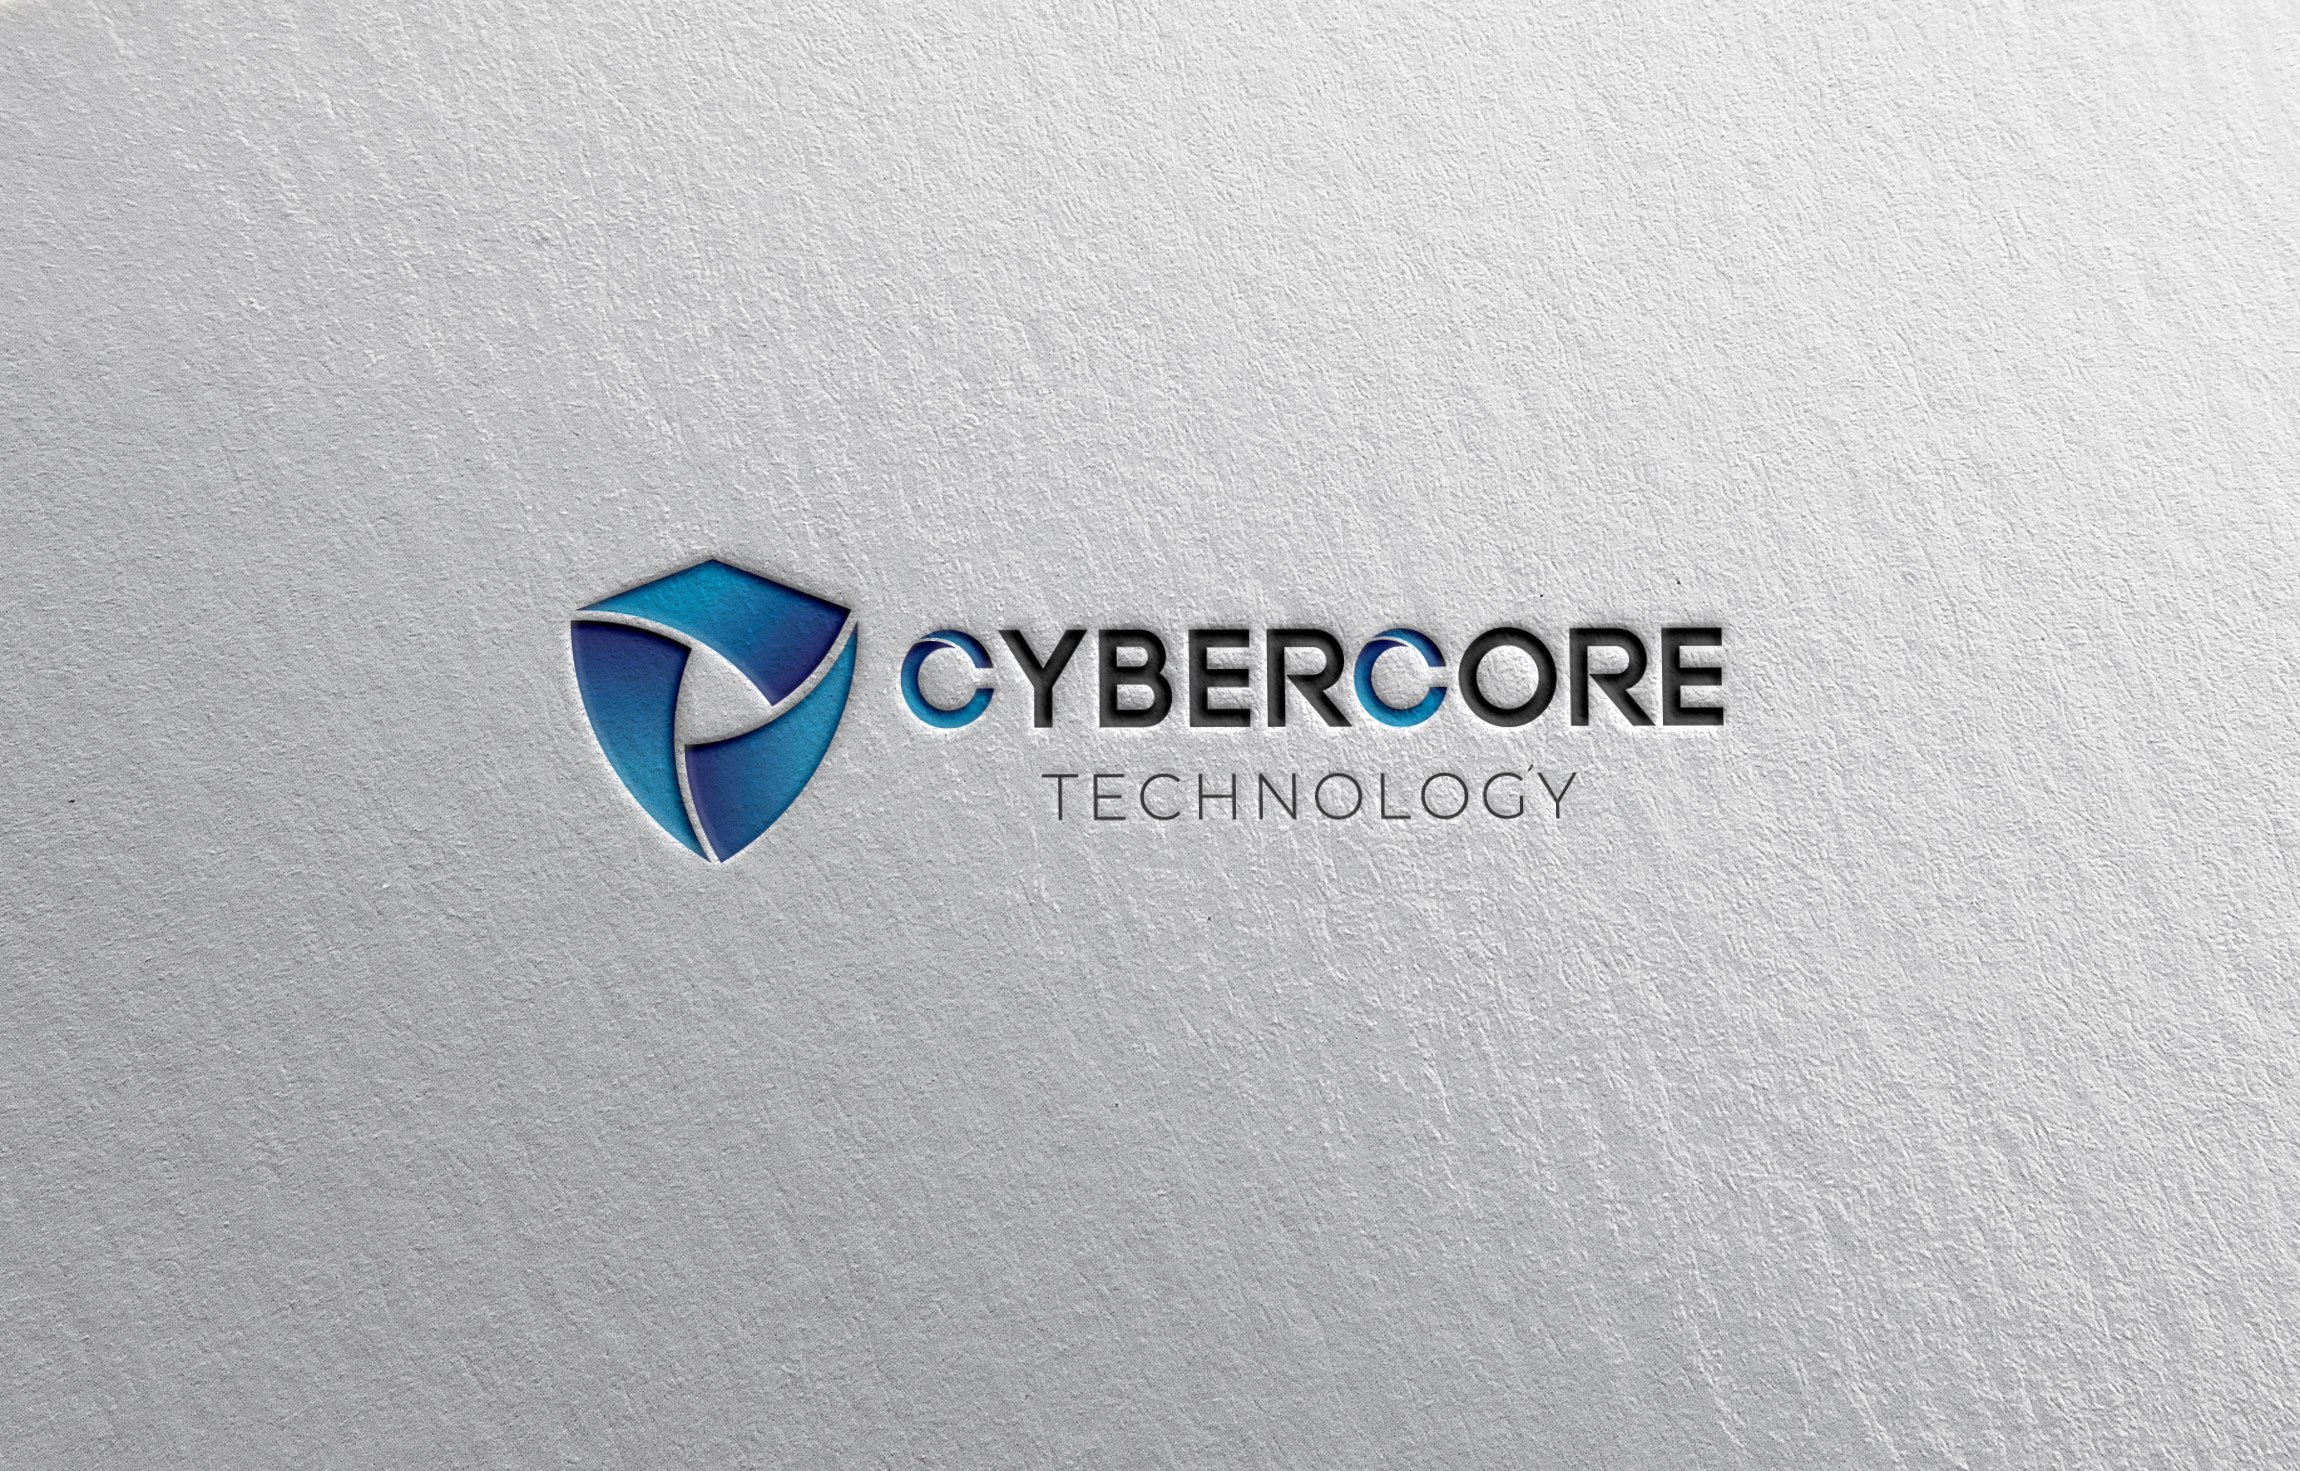 Cybercore Technology